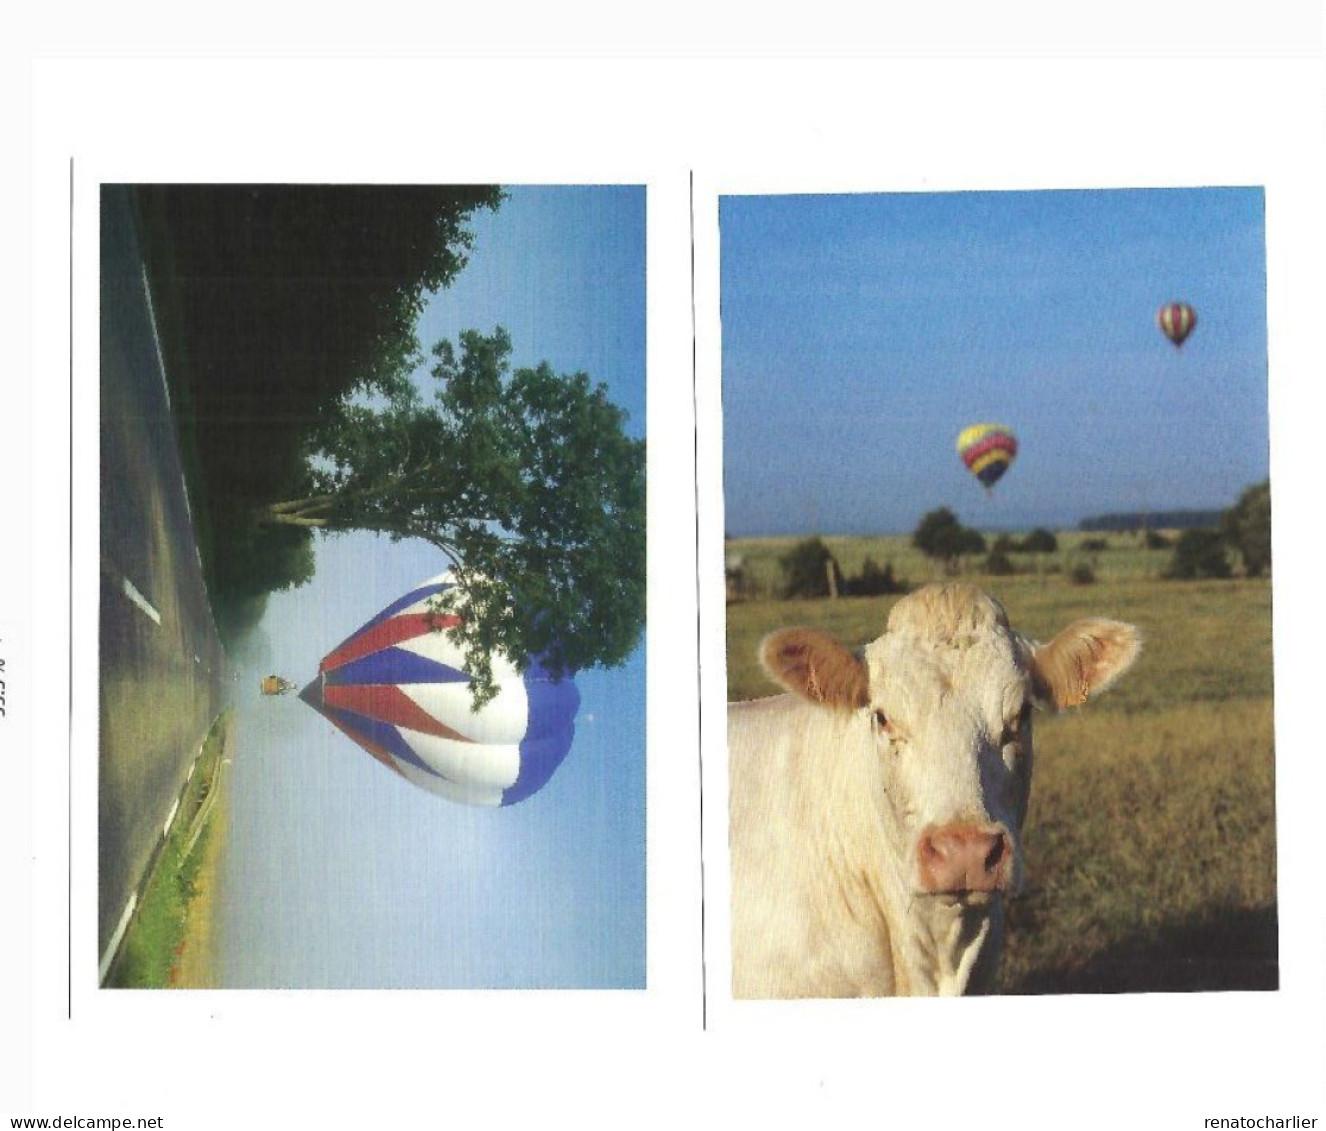 Série de 12 cartes postales Chambley Air Base 2003.Conseil général de Lorraine.